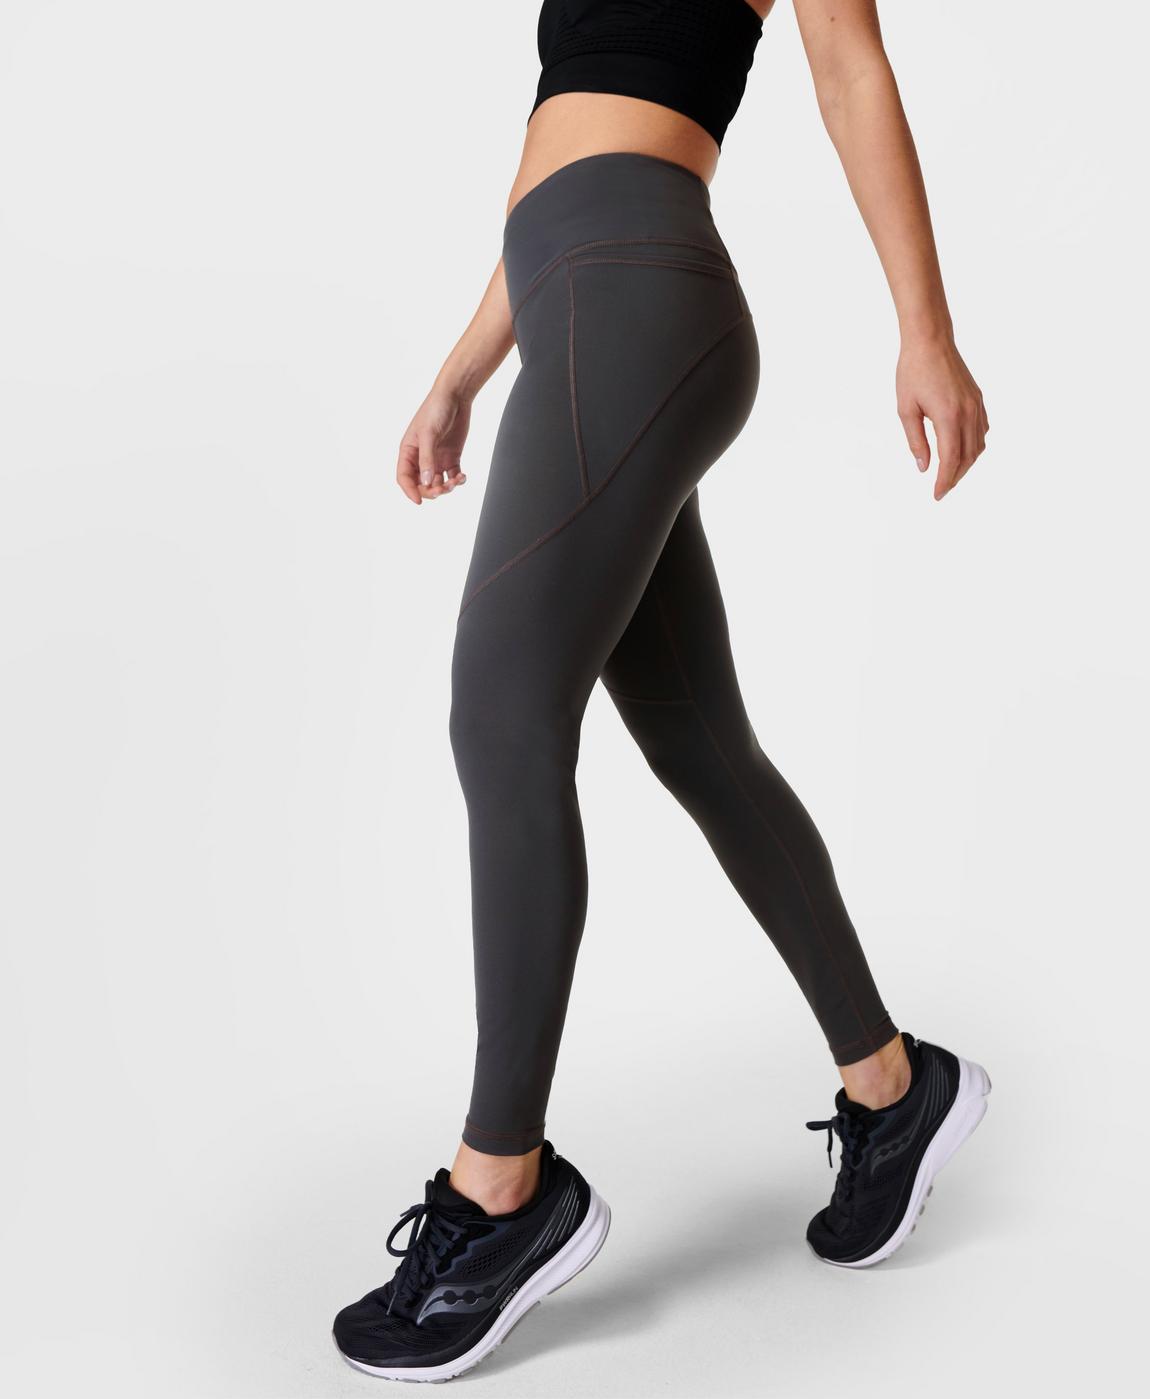 Power Gym Leggings - Slate Grey, Women's Leggings